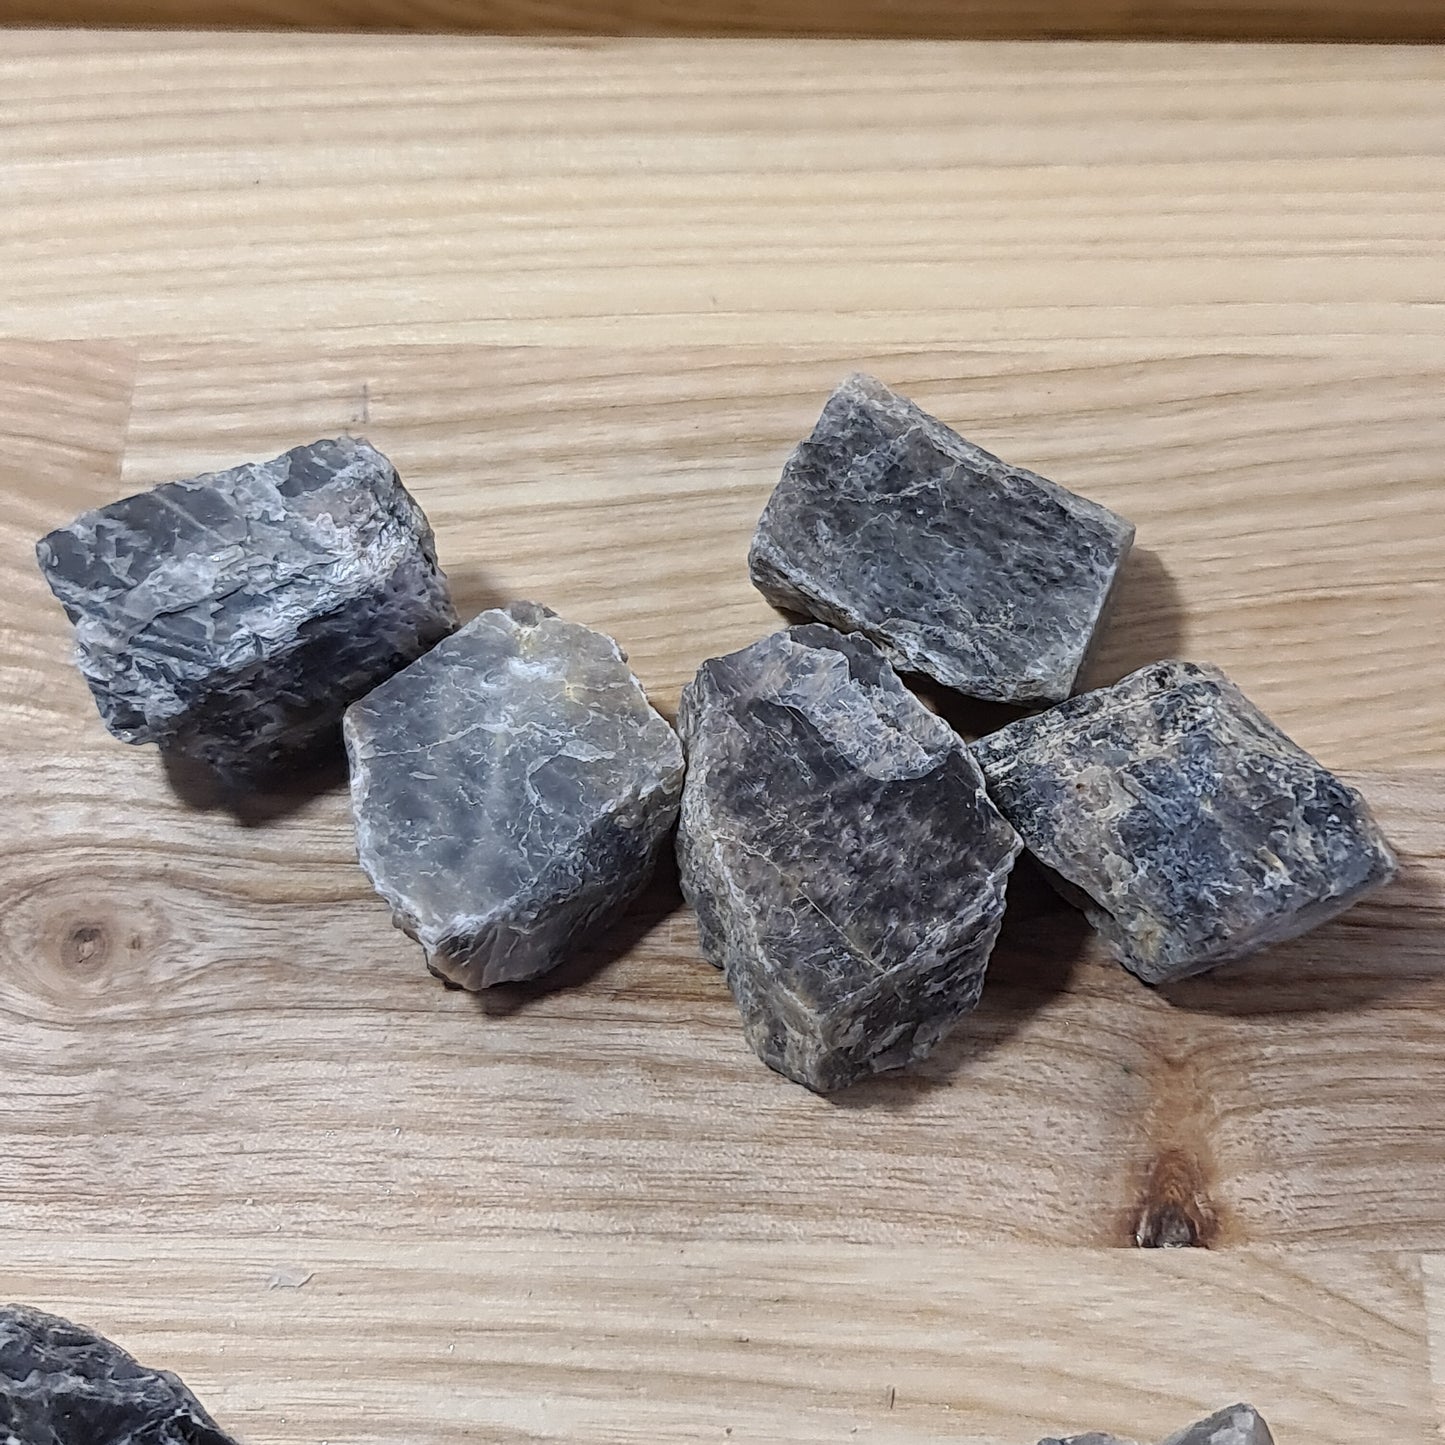 Black Moonstone Pieces